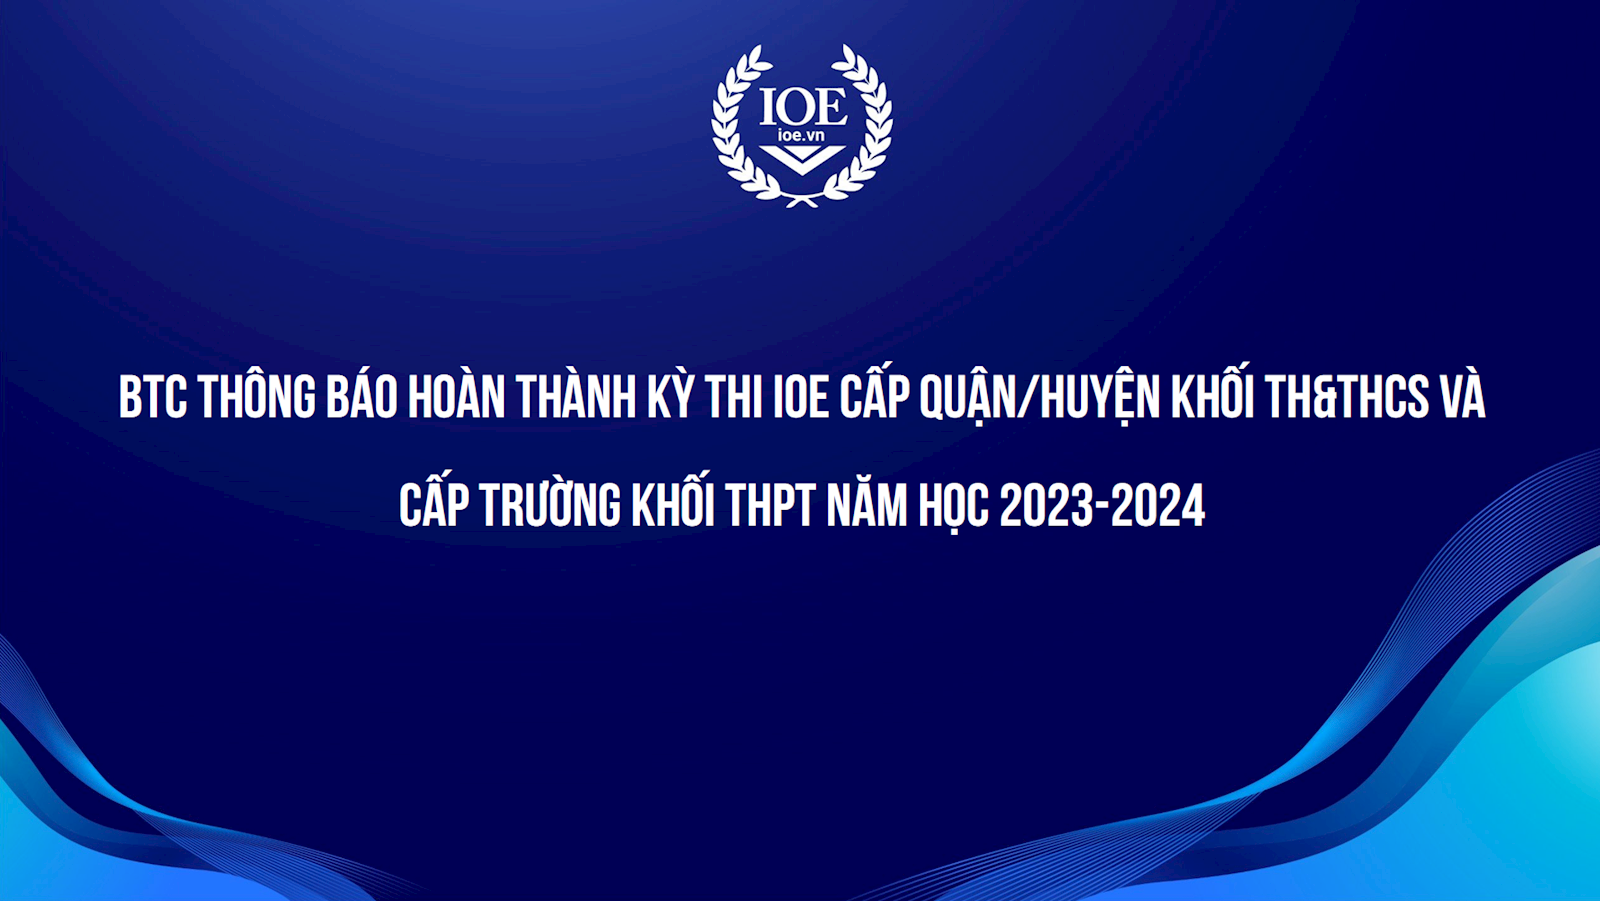 BTC thông báo hoàn thành kỳ thi IOE cấp quận/huyện khối TH&THCS và cấp trường khối THPT năm học 2023-2024